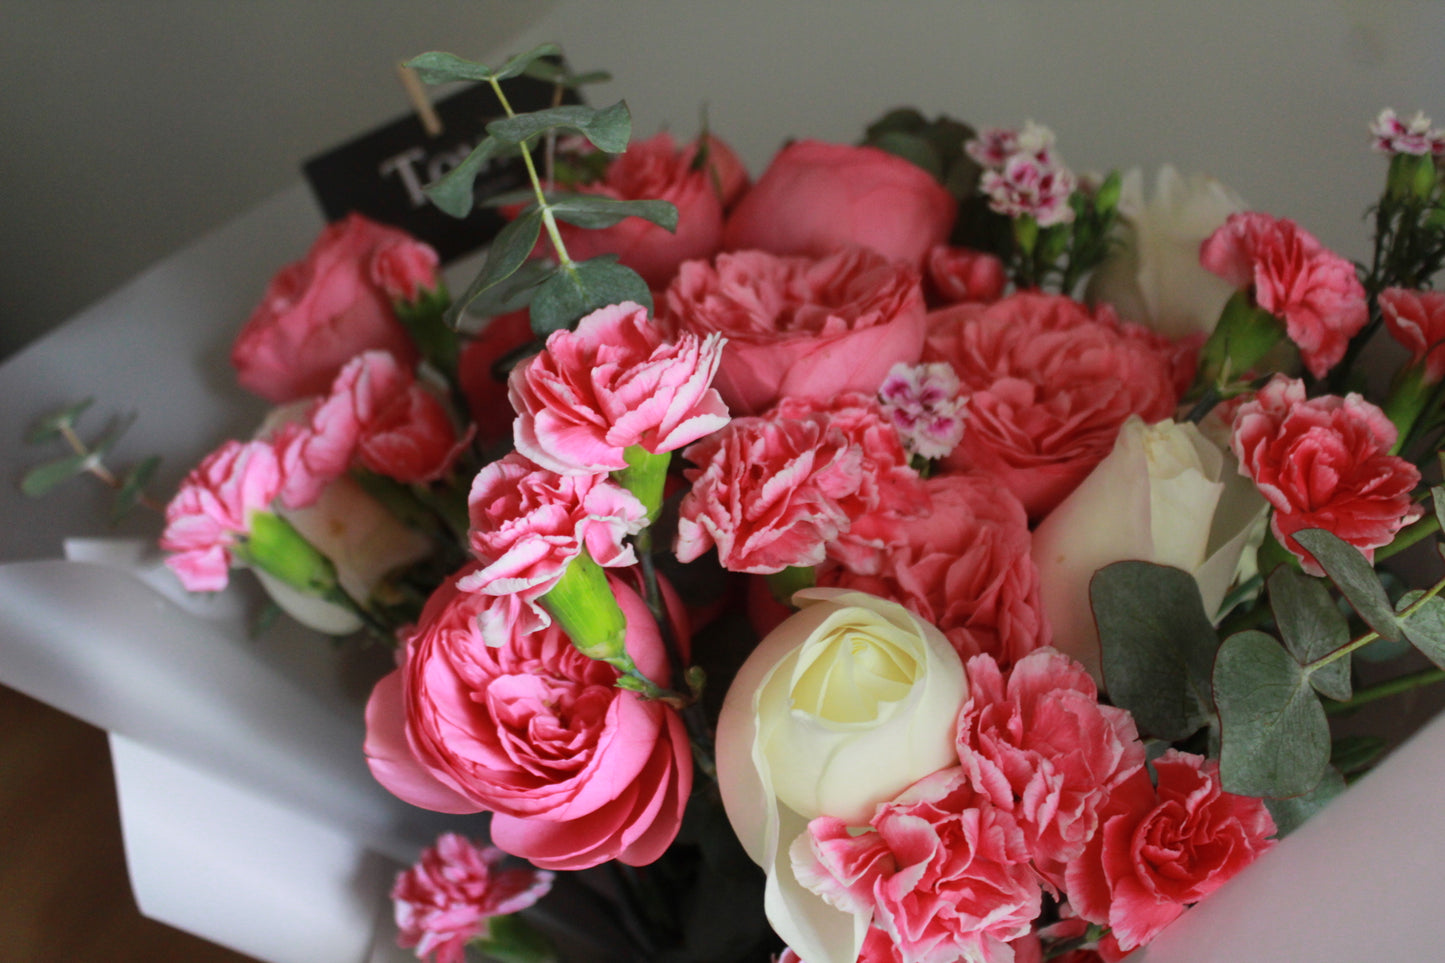 Rosas inglesas, claveles, rosas de invernadero y follaje.